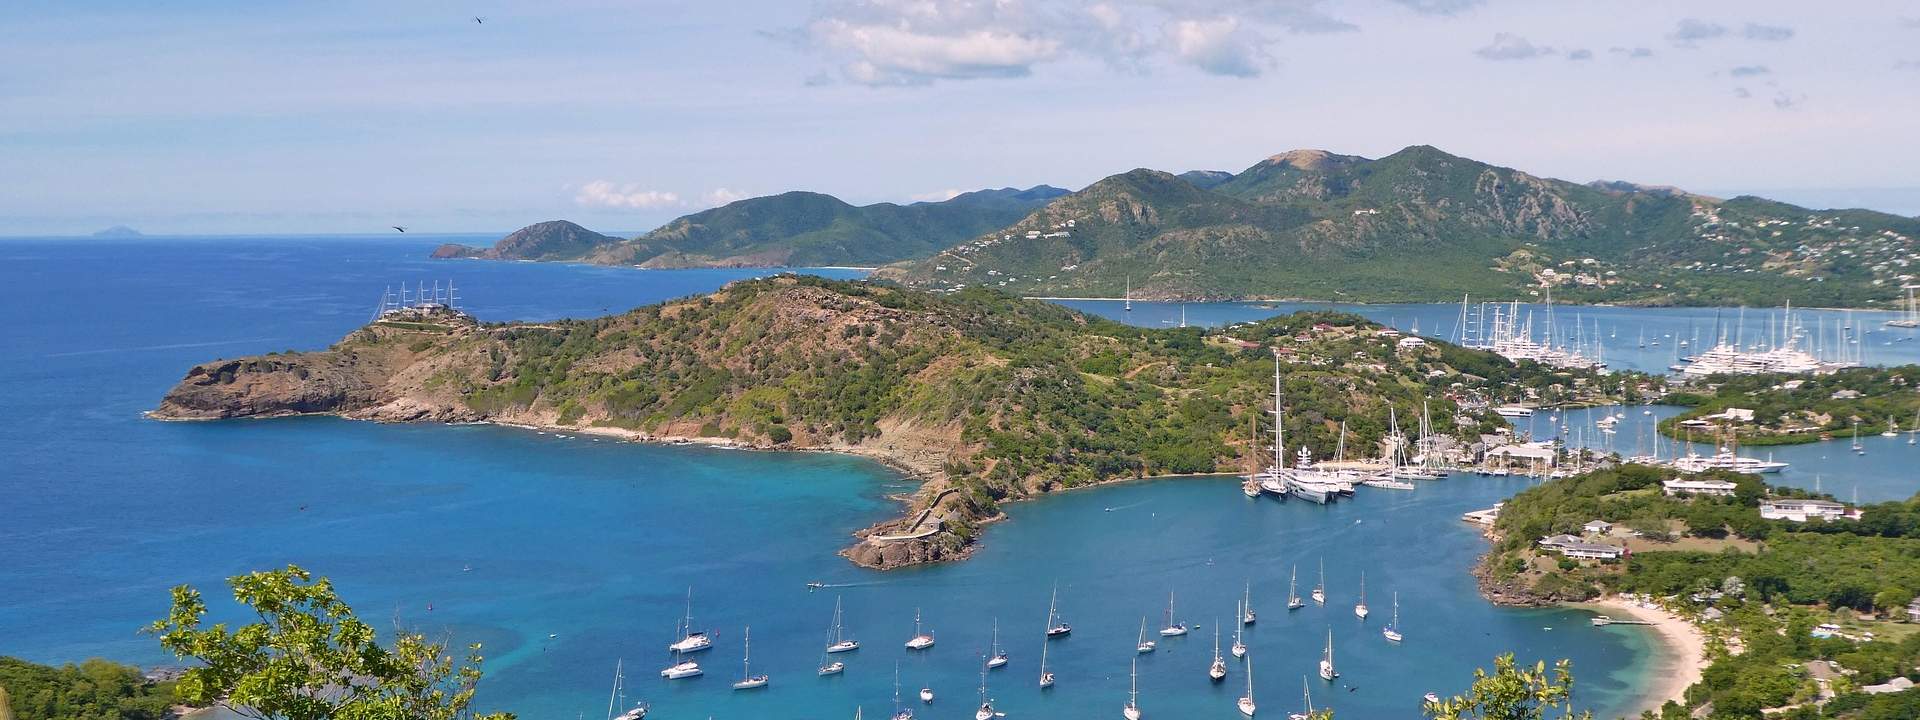 Le più belle isole dei Caraibi a bordo di una nave d'eccezione